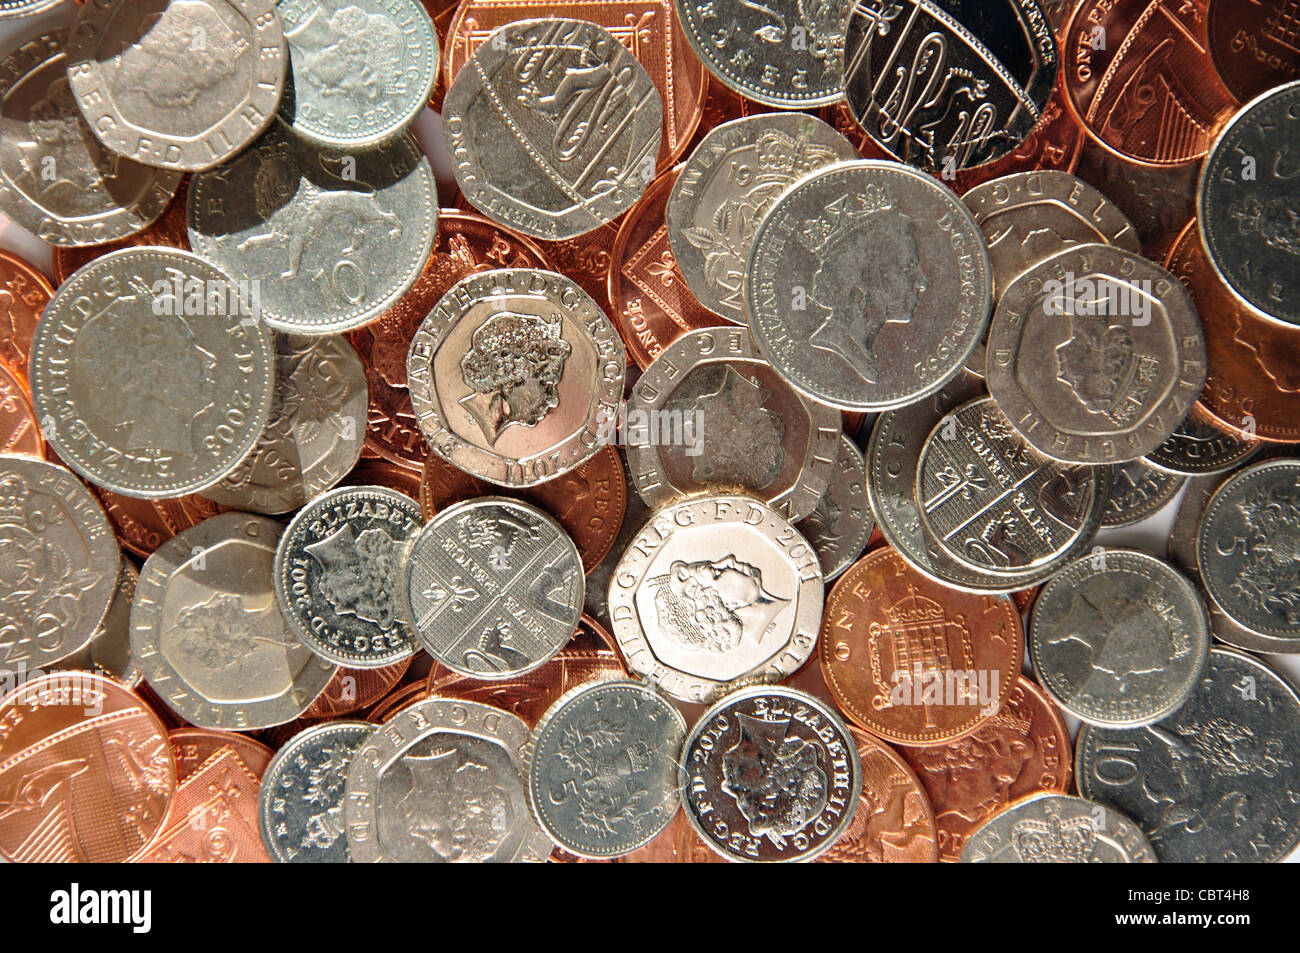 Colección de monedas de Inglaterra, Greater London, England, Reino Unido Foto de stock